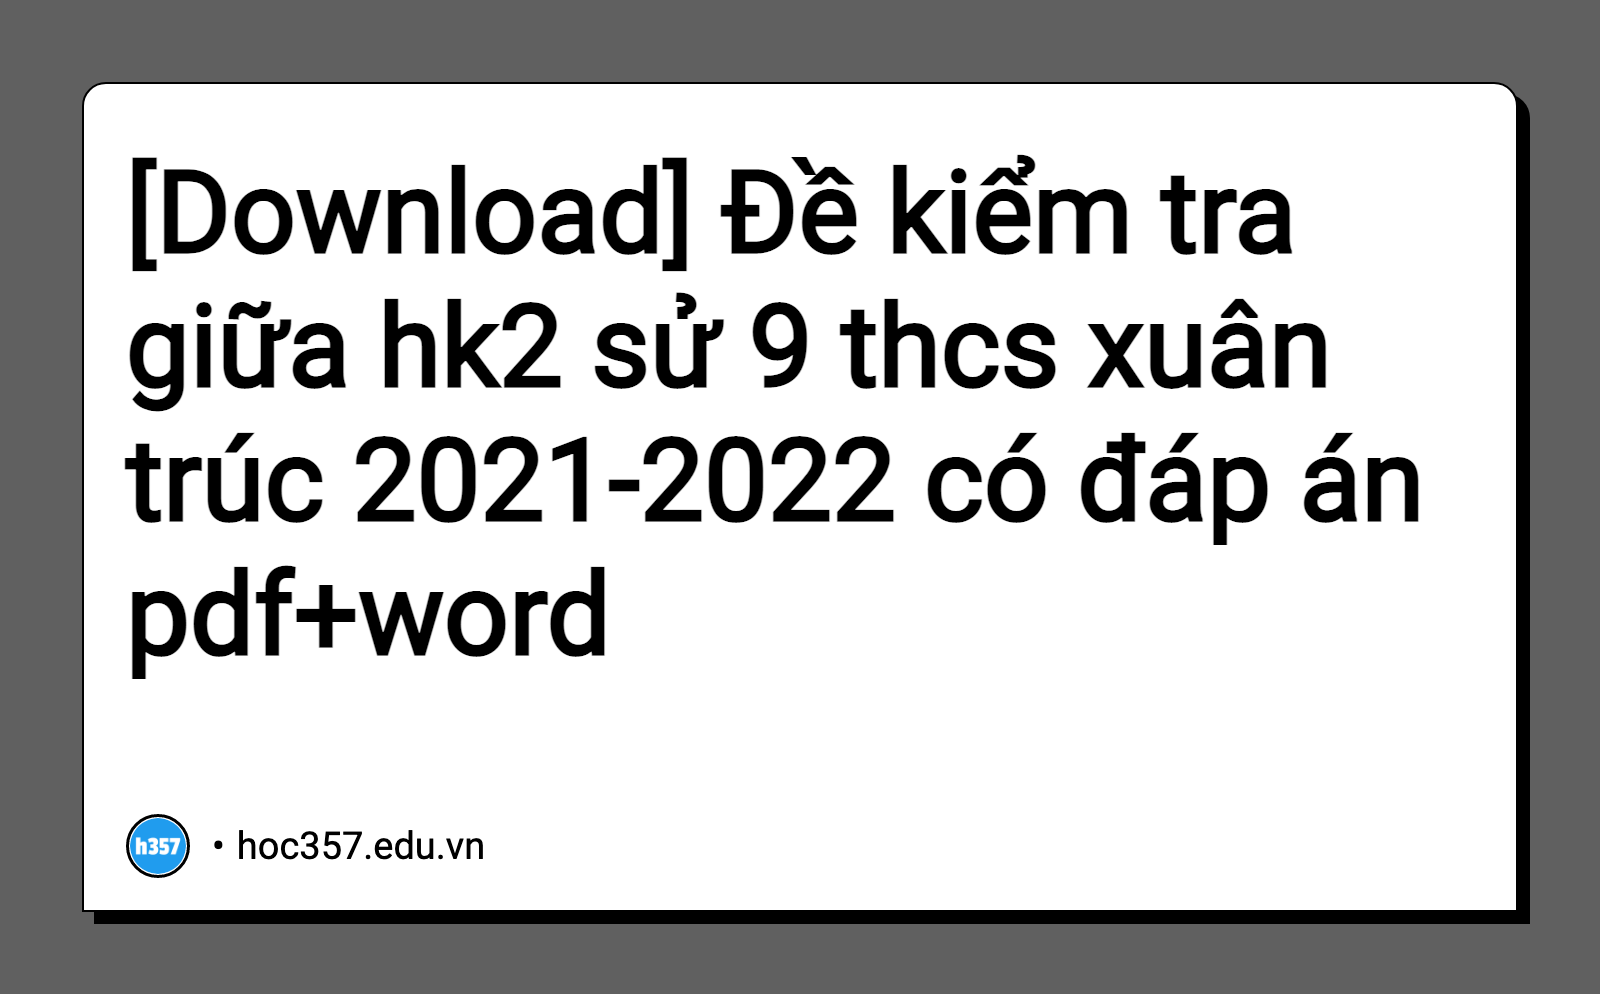 Hình minh họa Đề kiểm tra giữa hk2 sử 9 thcs xuân trúc 2021-2022 có đáp án